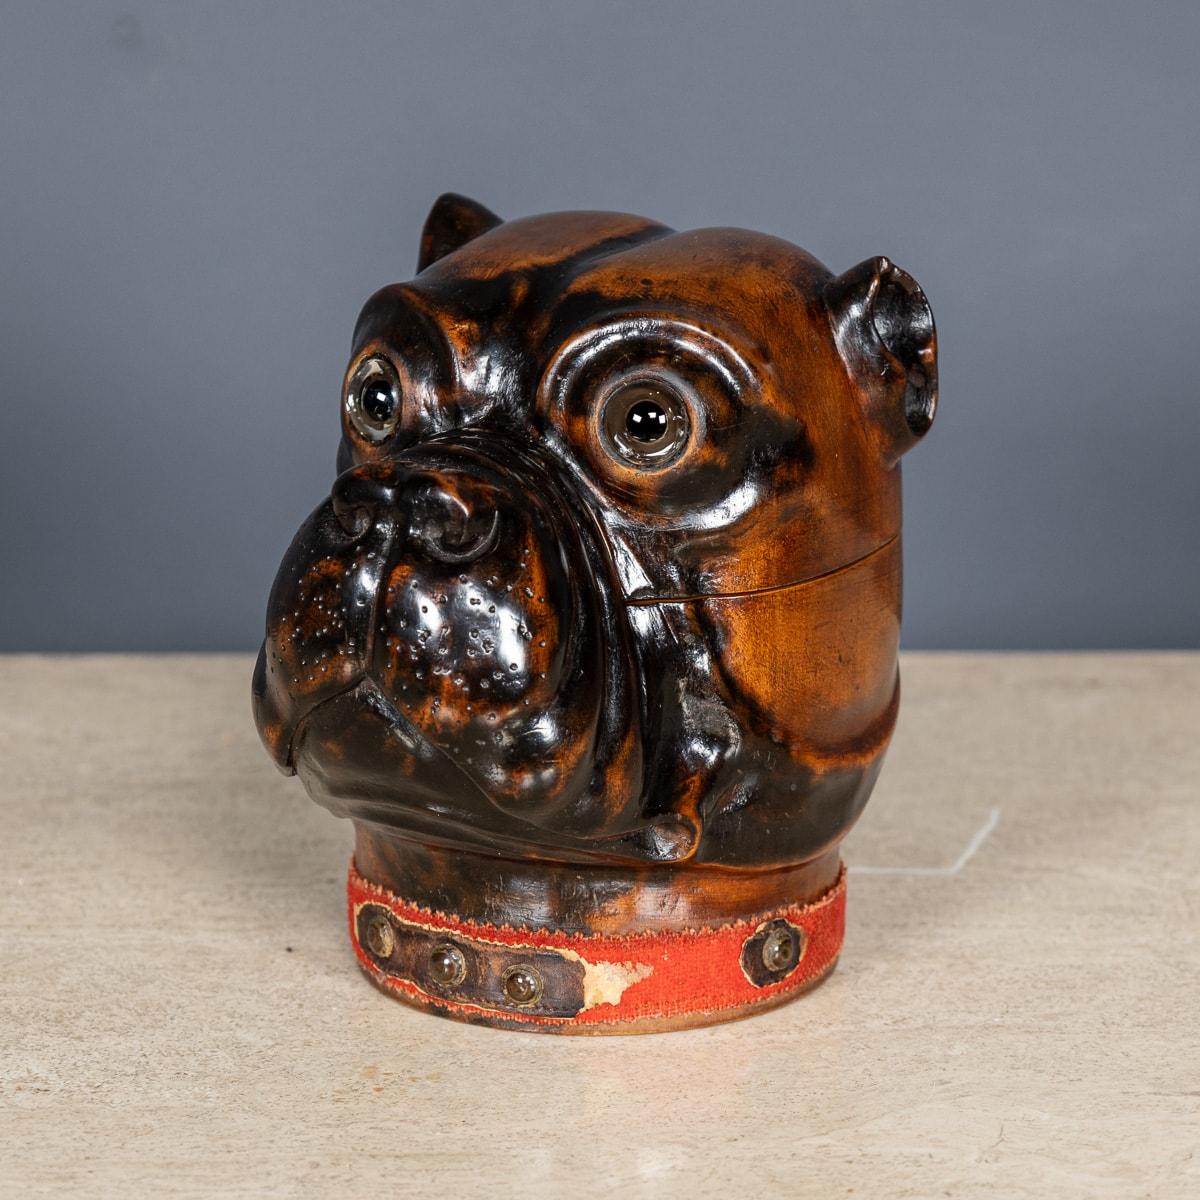 Antikes viktorianisches Lignum-vitae-Tintenfass aus dem frühen 20. Jahrhundert, geschnitzt in Form eines Bulldoggenkopfes. Die Details sind von außergewöhnlicher Qualität, mit Glasaugen und einem roten Filzkragen um die Basis. Das Innere hat ein